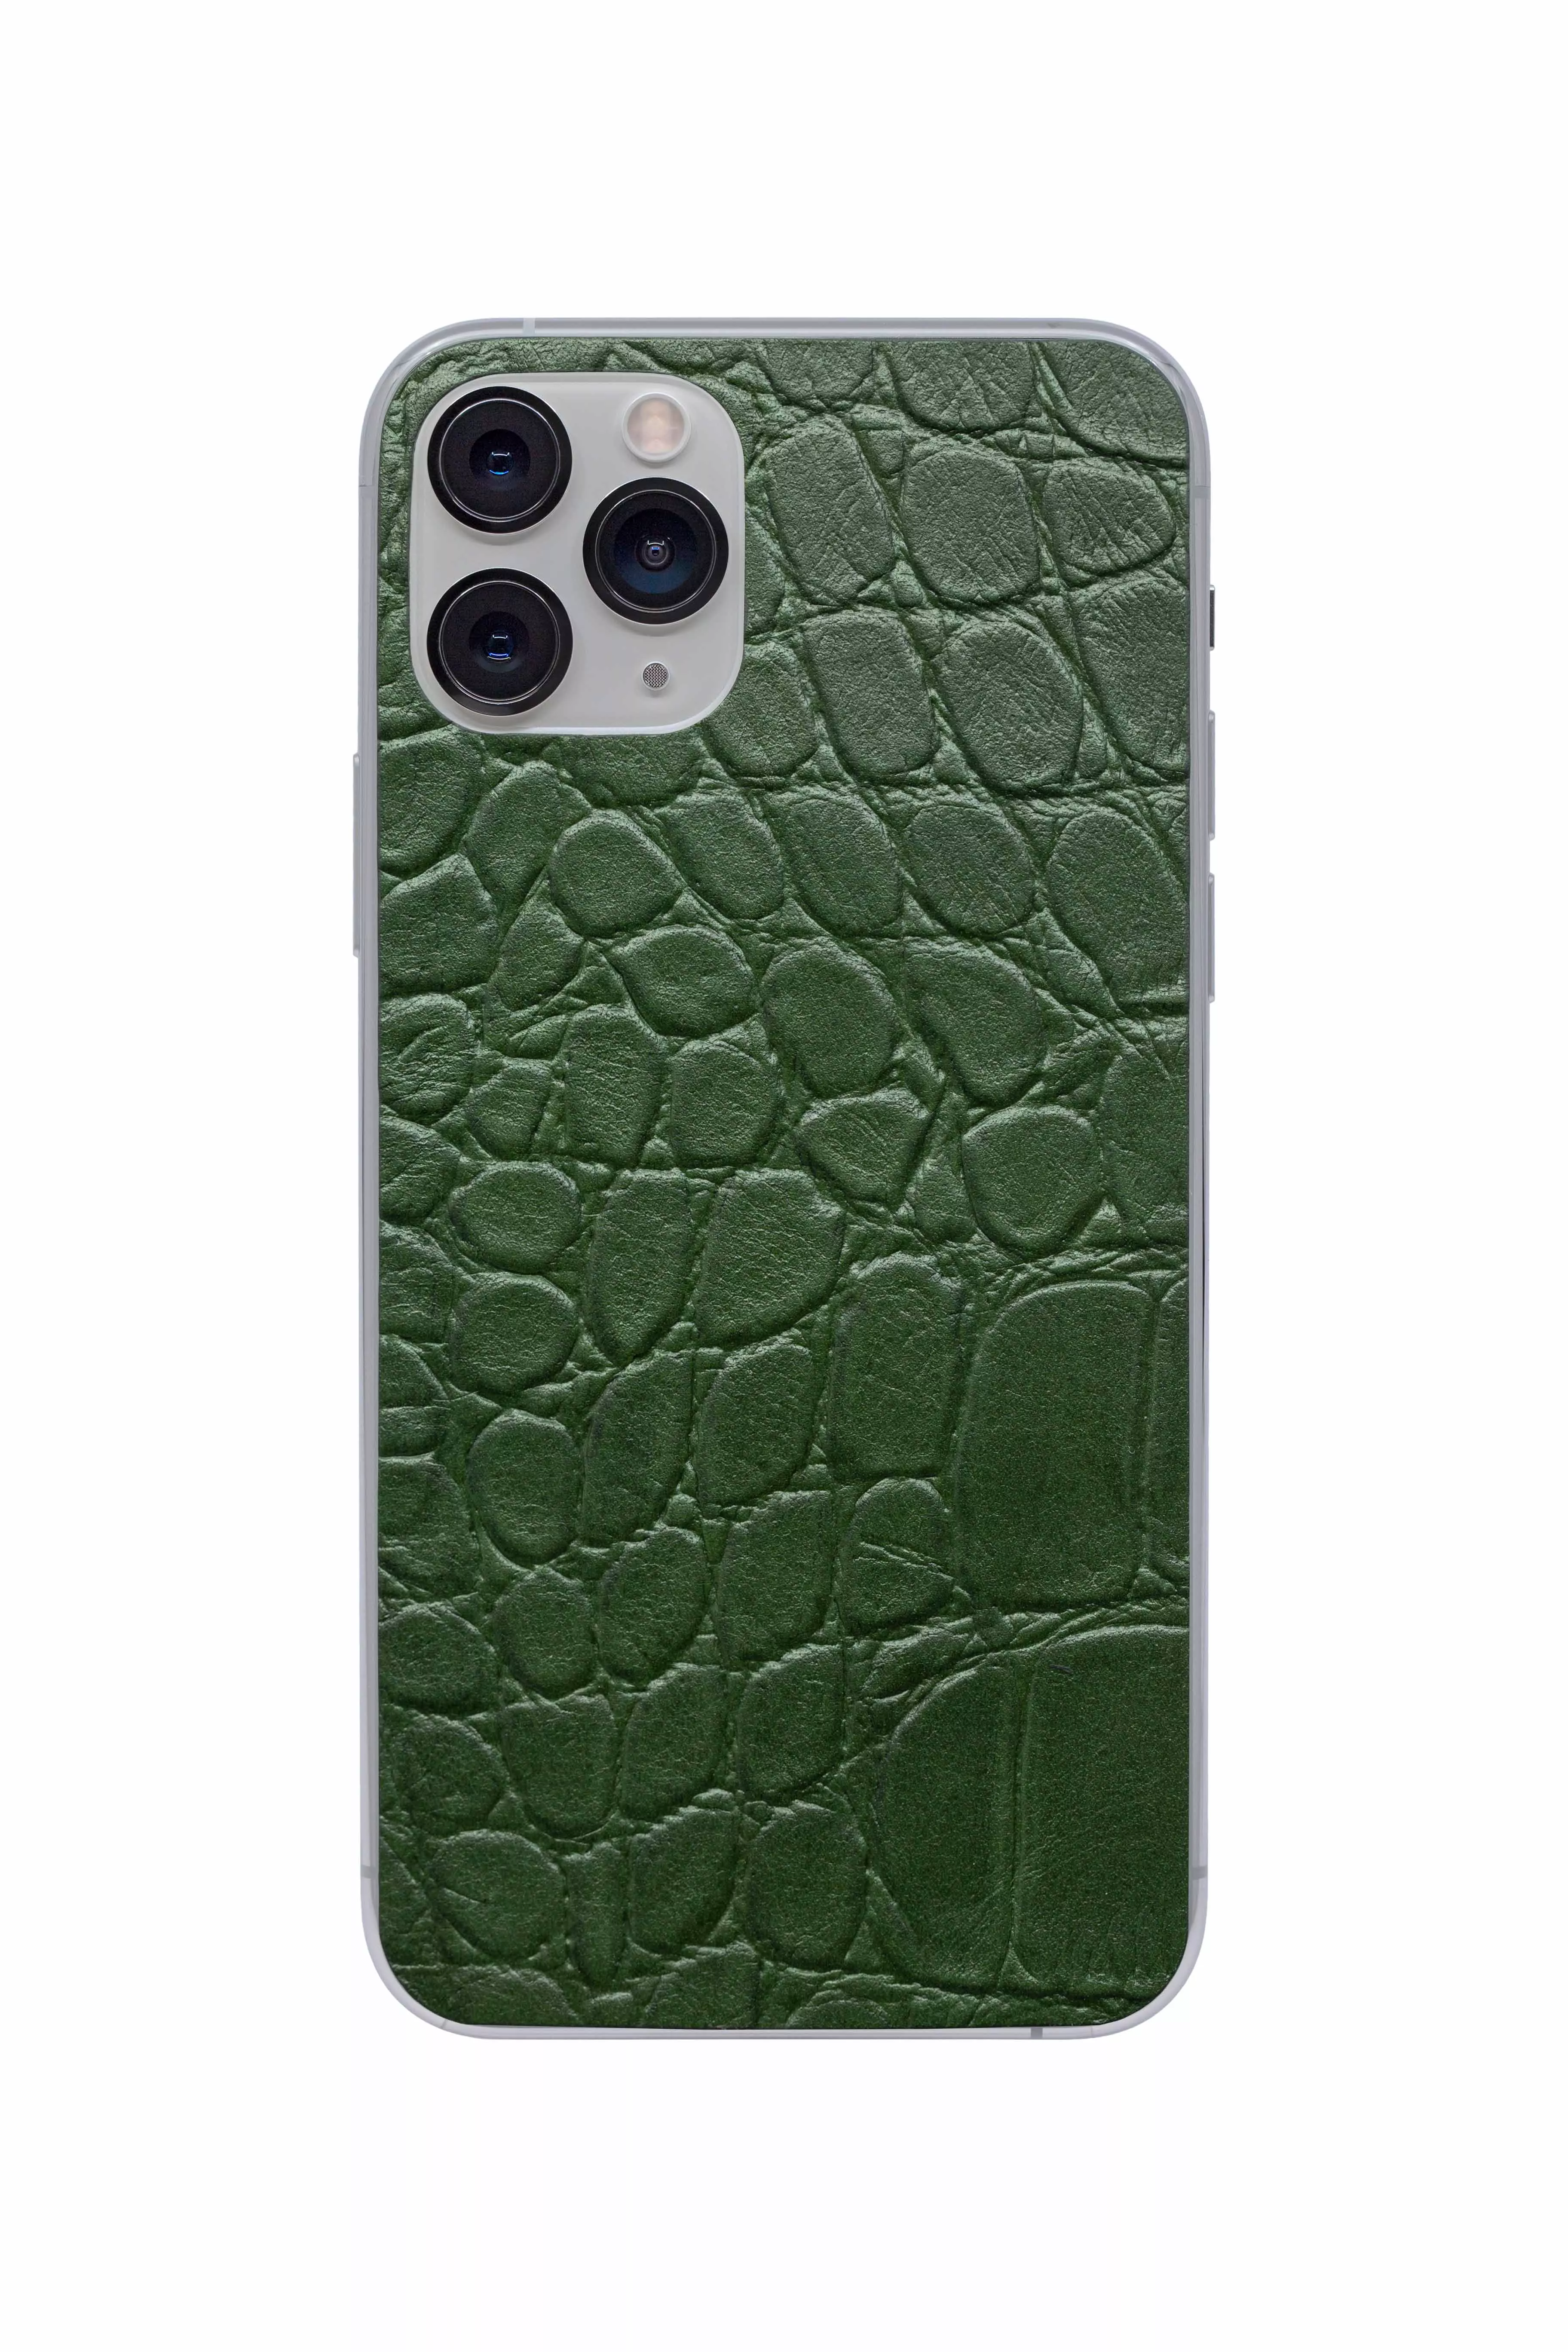 Защитная наклейка из натуральной кожи для iPhone 11 Pro, Вид Зеленый 2. Вид 1